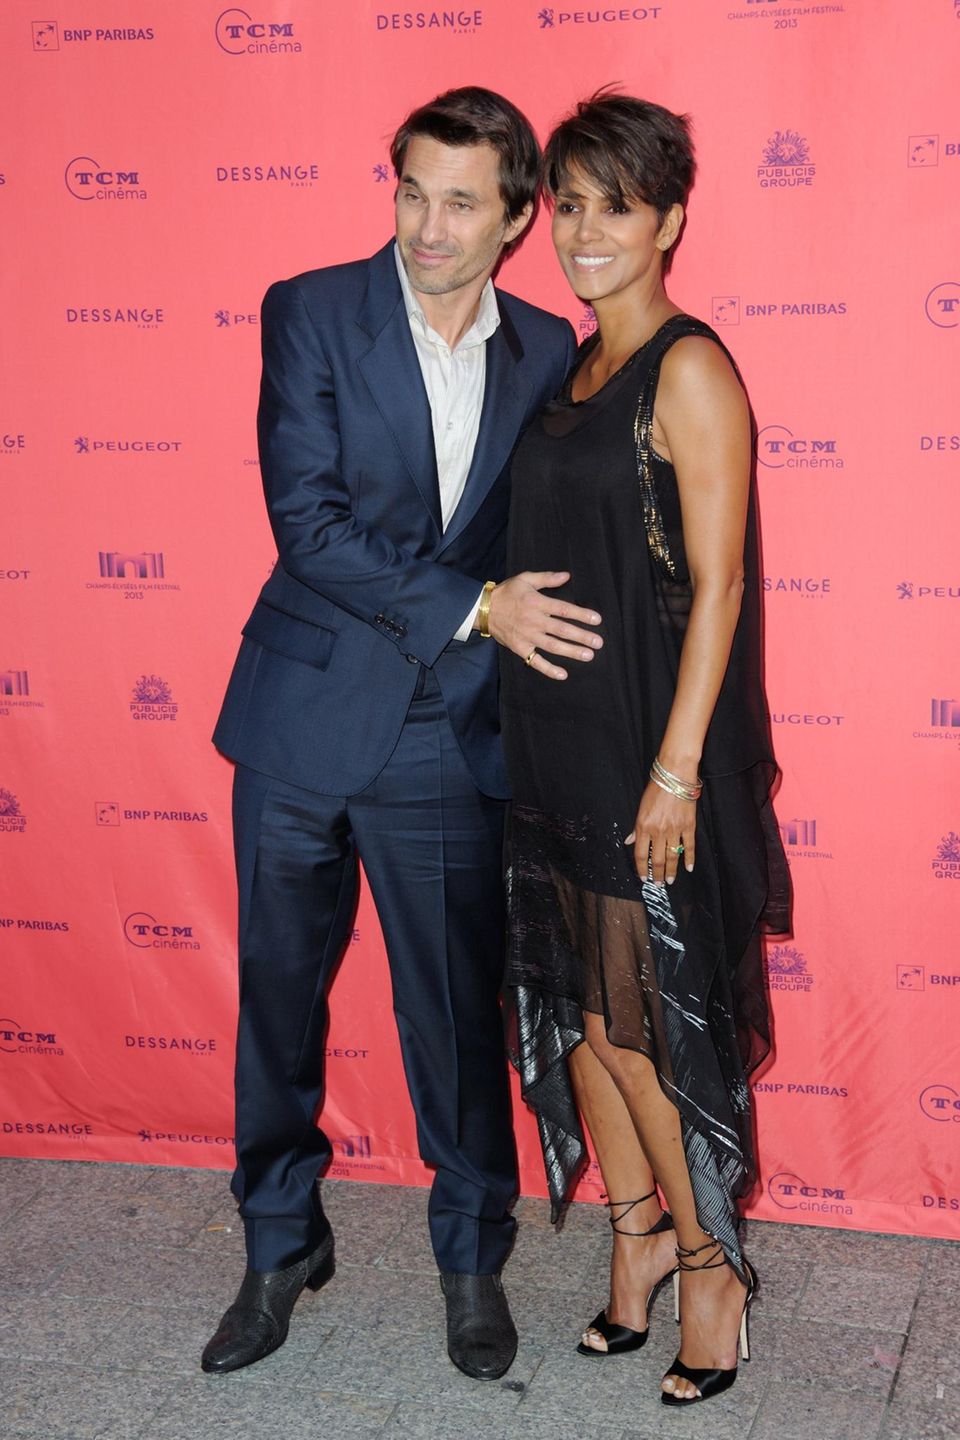 Juni 2013: Olivier Martinez, streicht stolz über den Babybauch seiner Verlobten Halle Berry. Die beiden sind für das "Champs-Elysees Film Festival" nach Paris gereist.